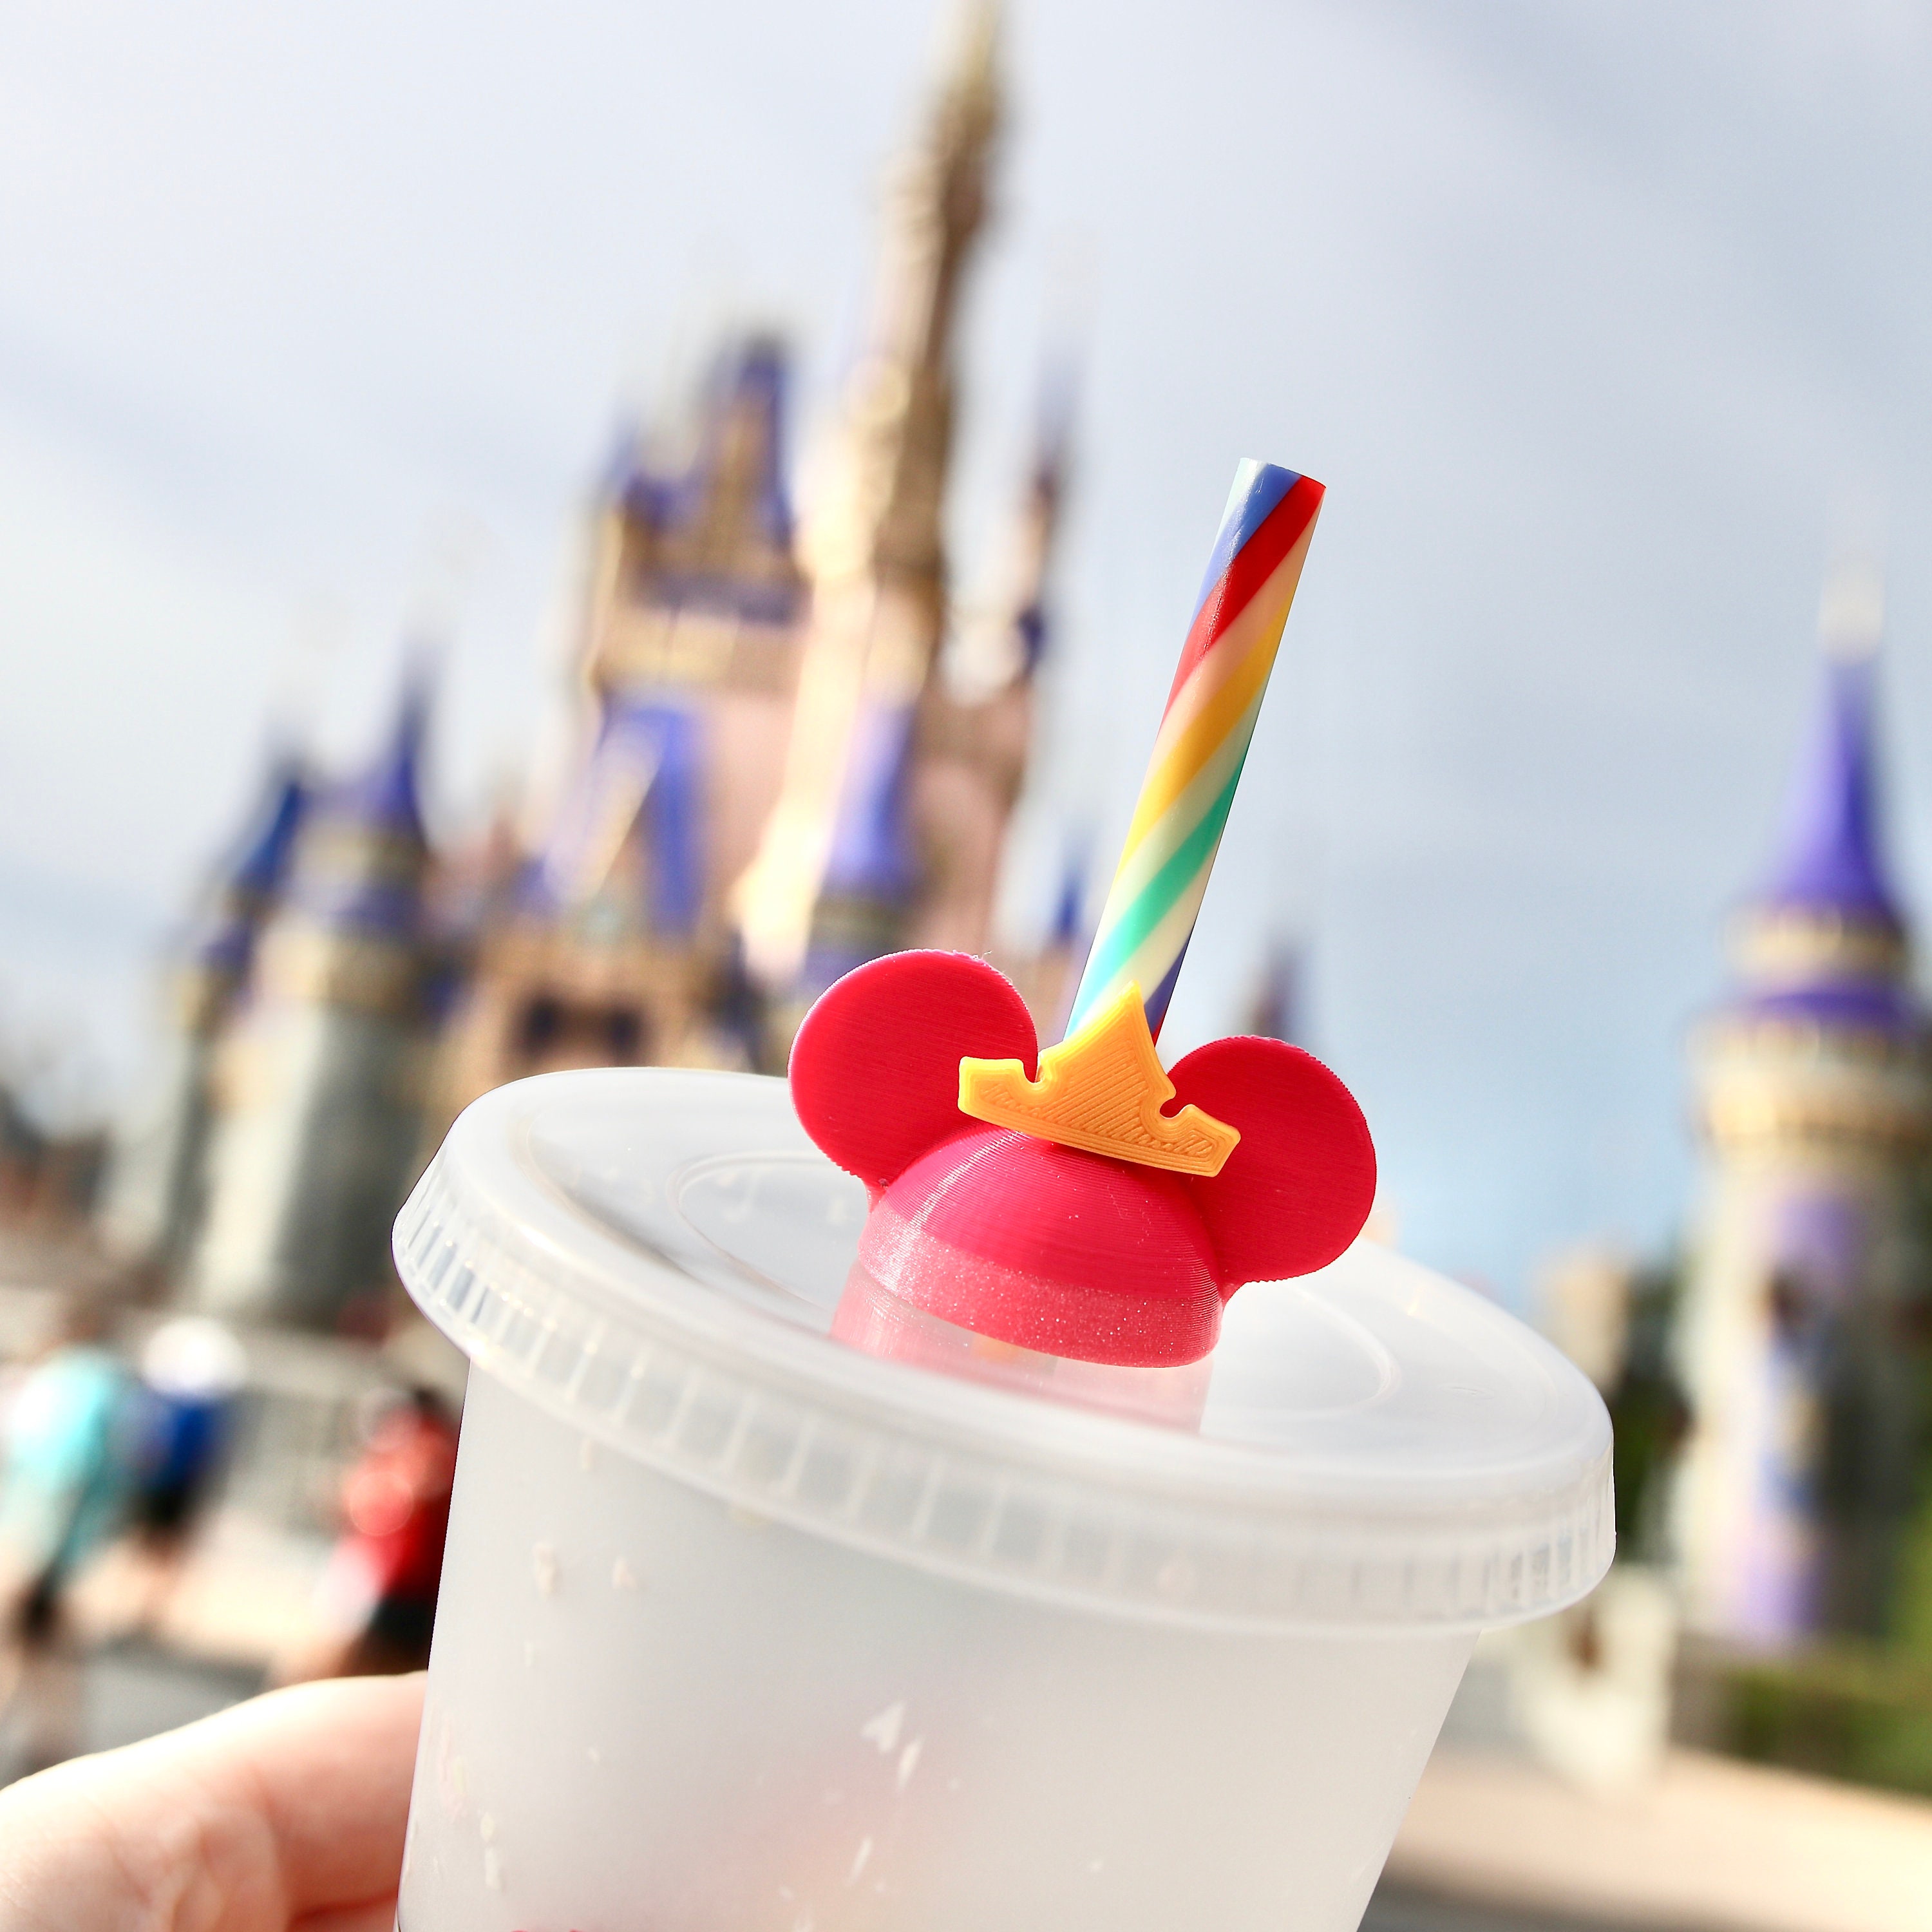 Disney Mickey Magical Straw Topper Straw Buddy Straw Charm